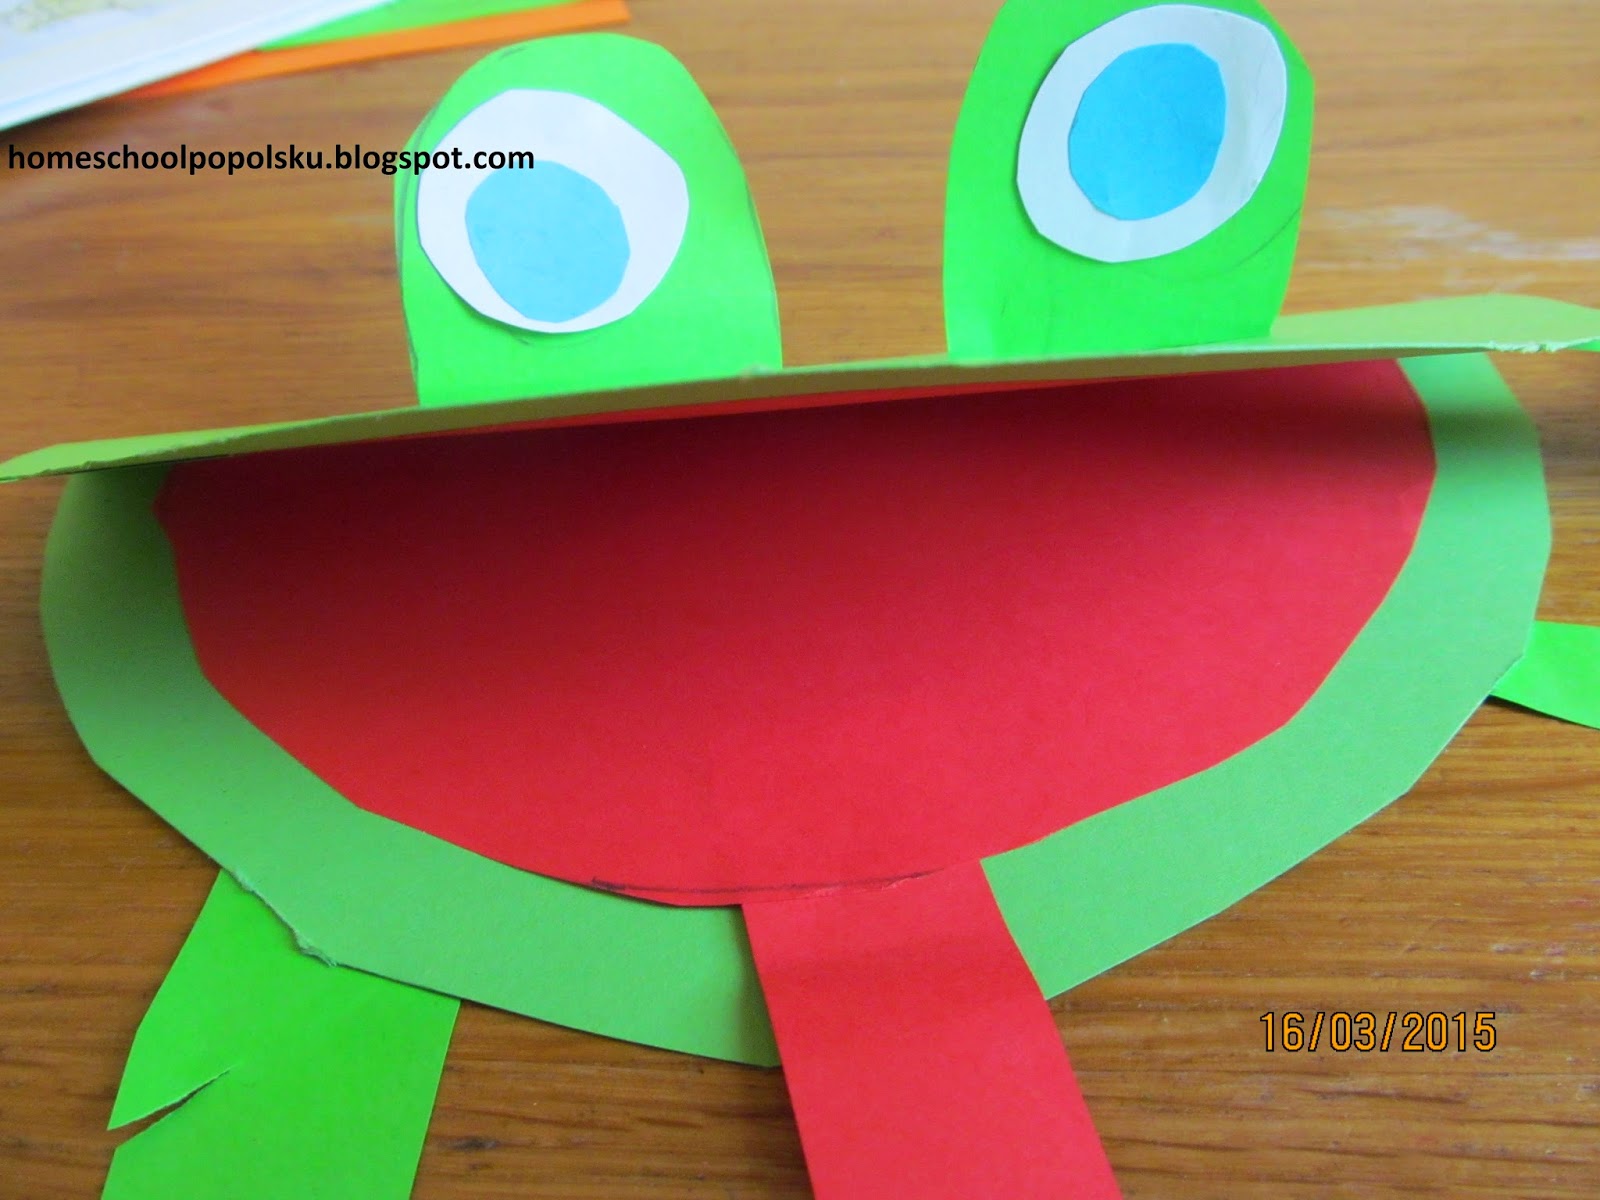 Jak Zrobic Zabe Z Origami homeschoolpopolsku: żaby z papieru